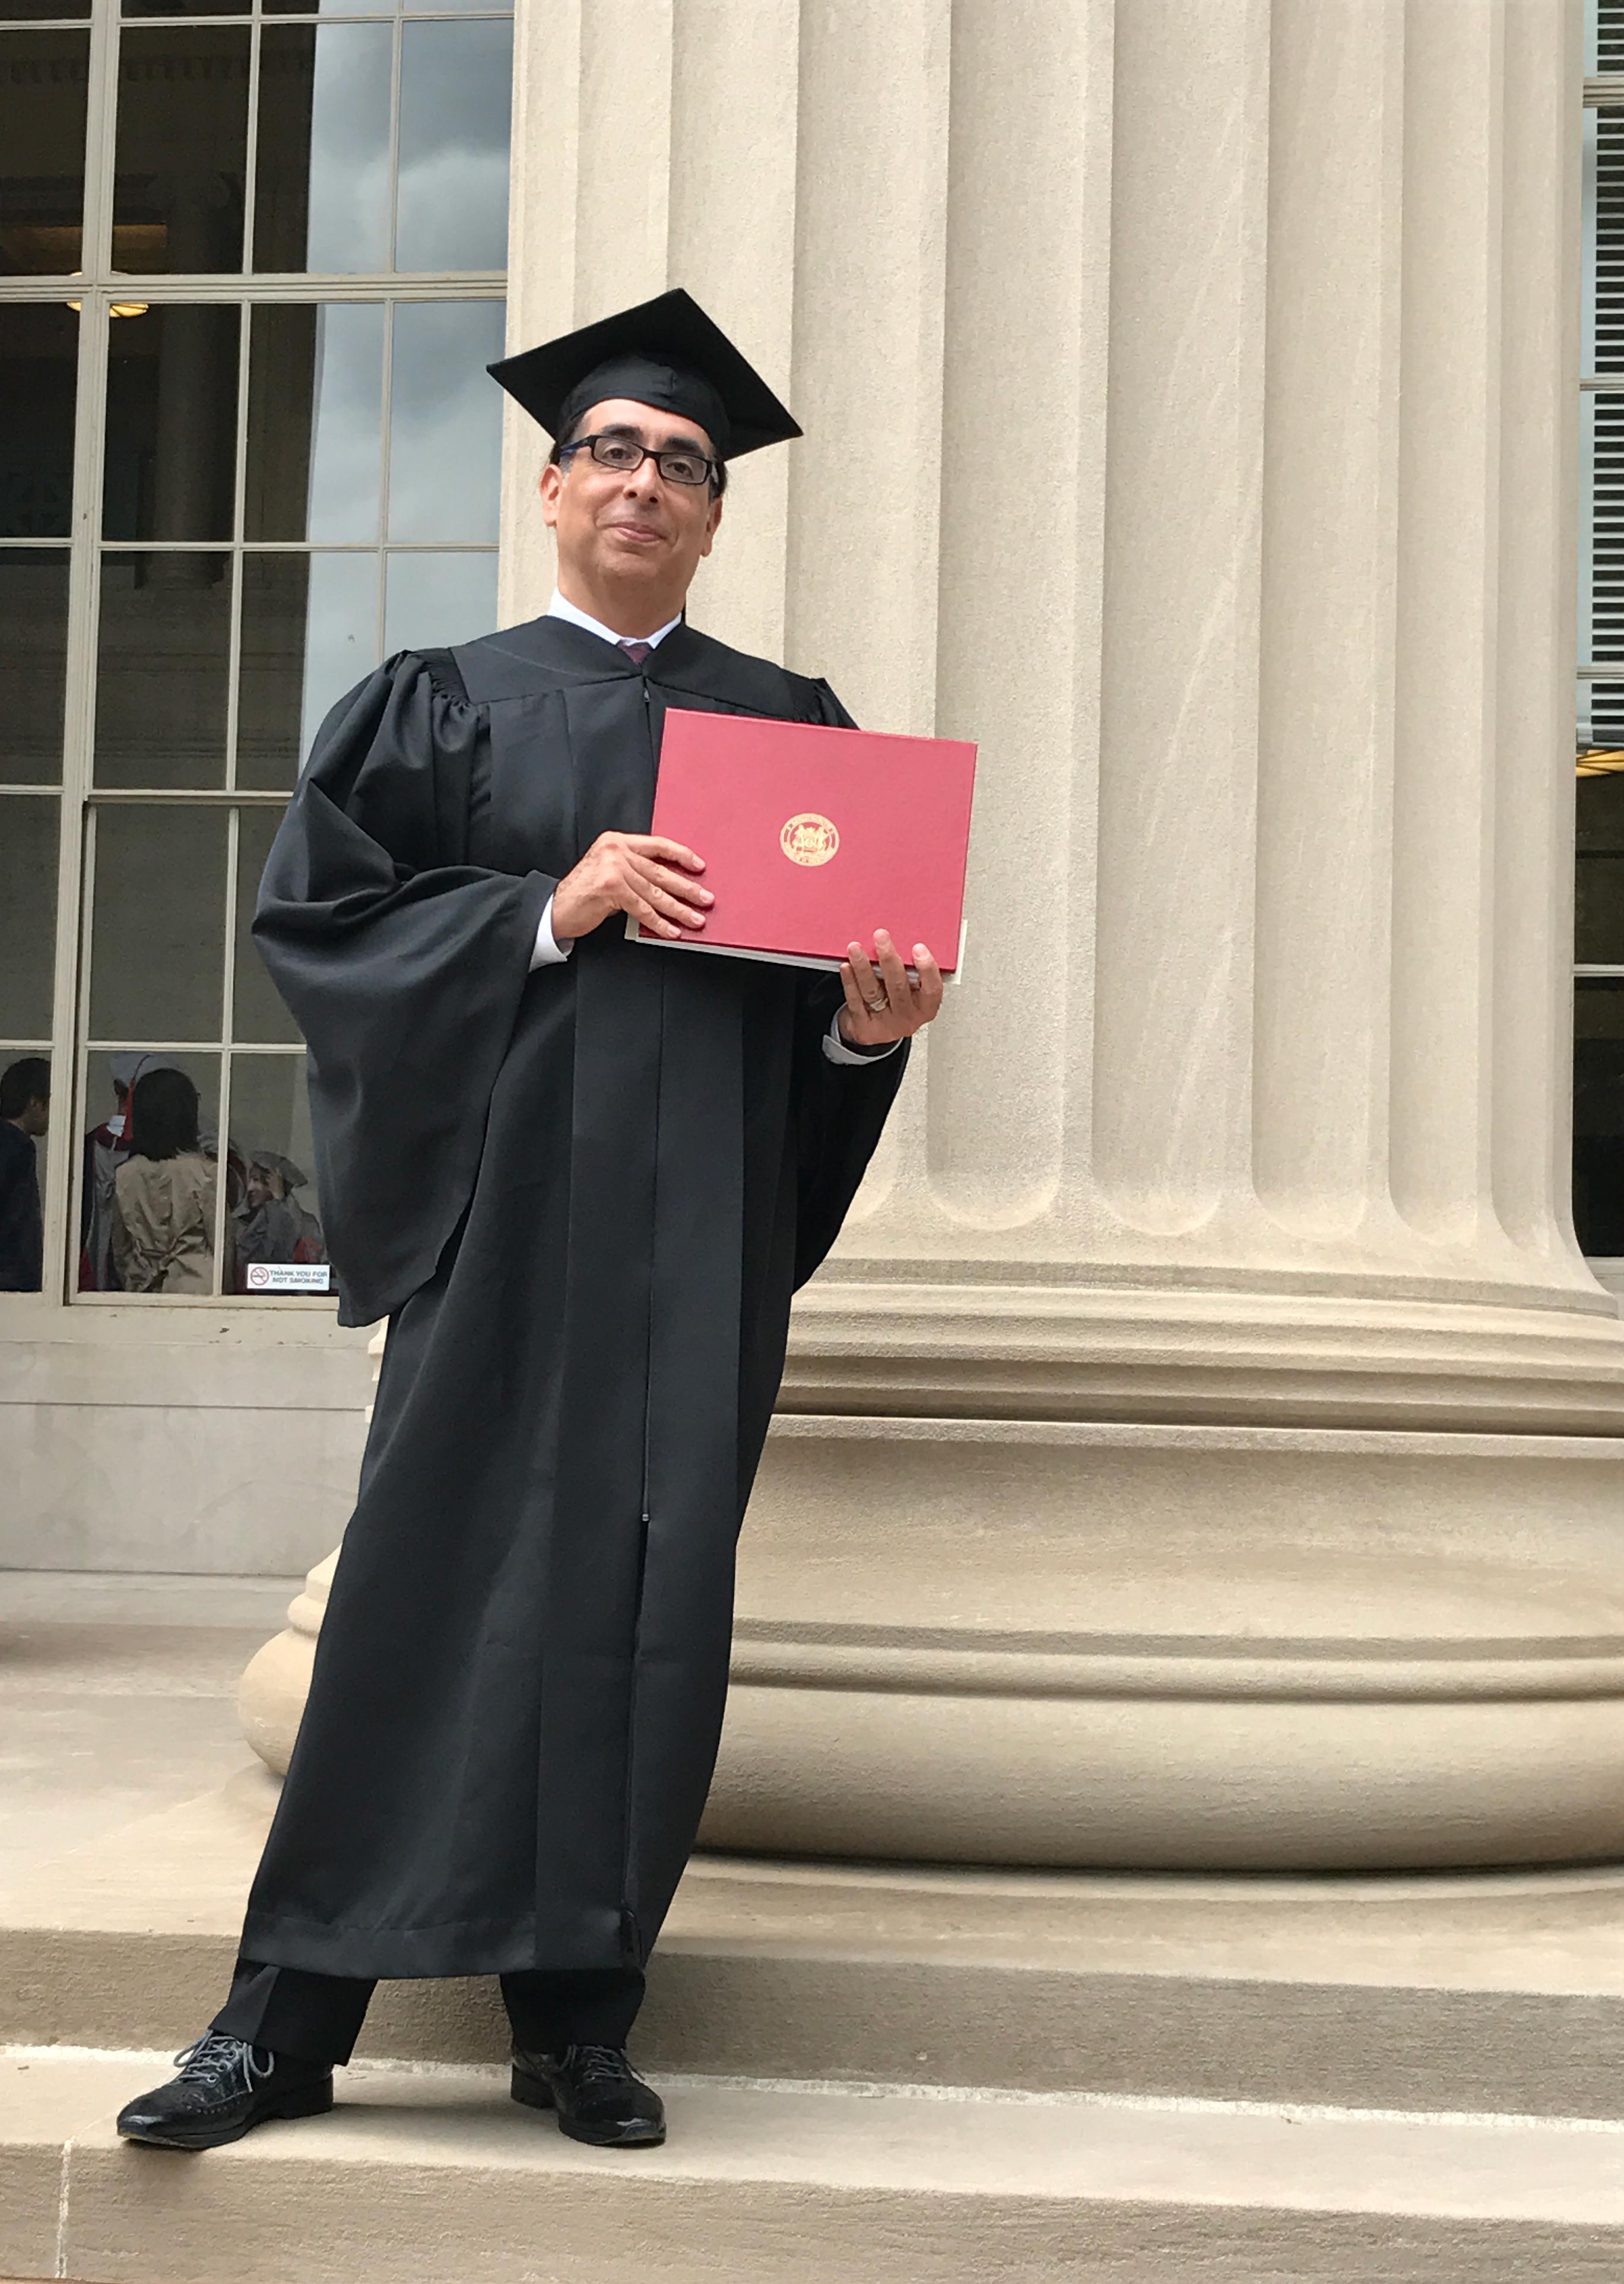 Rod Lozano and diploma